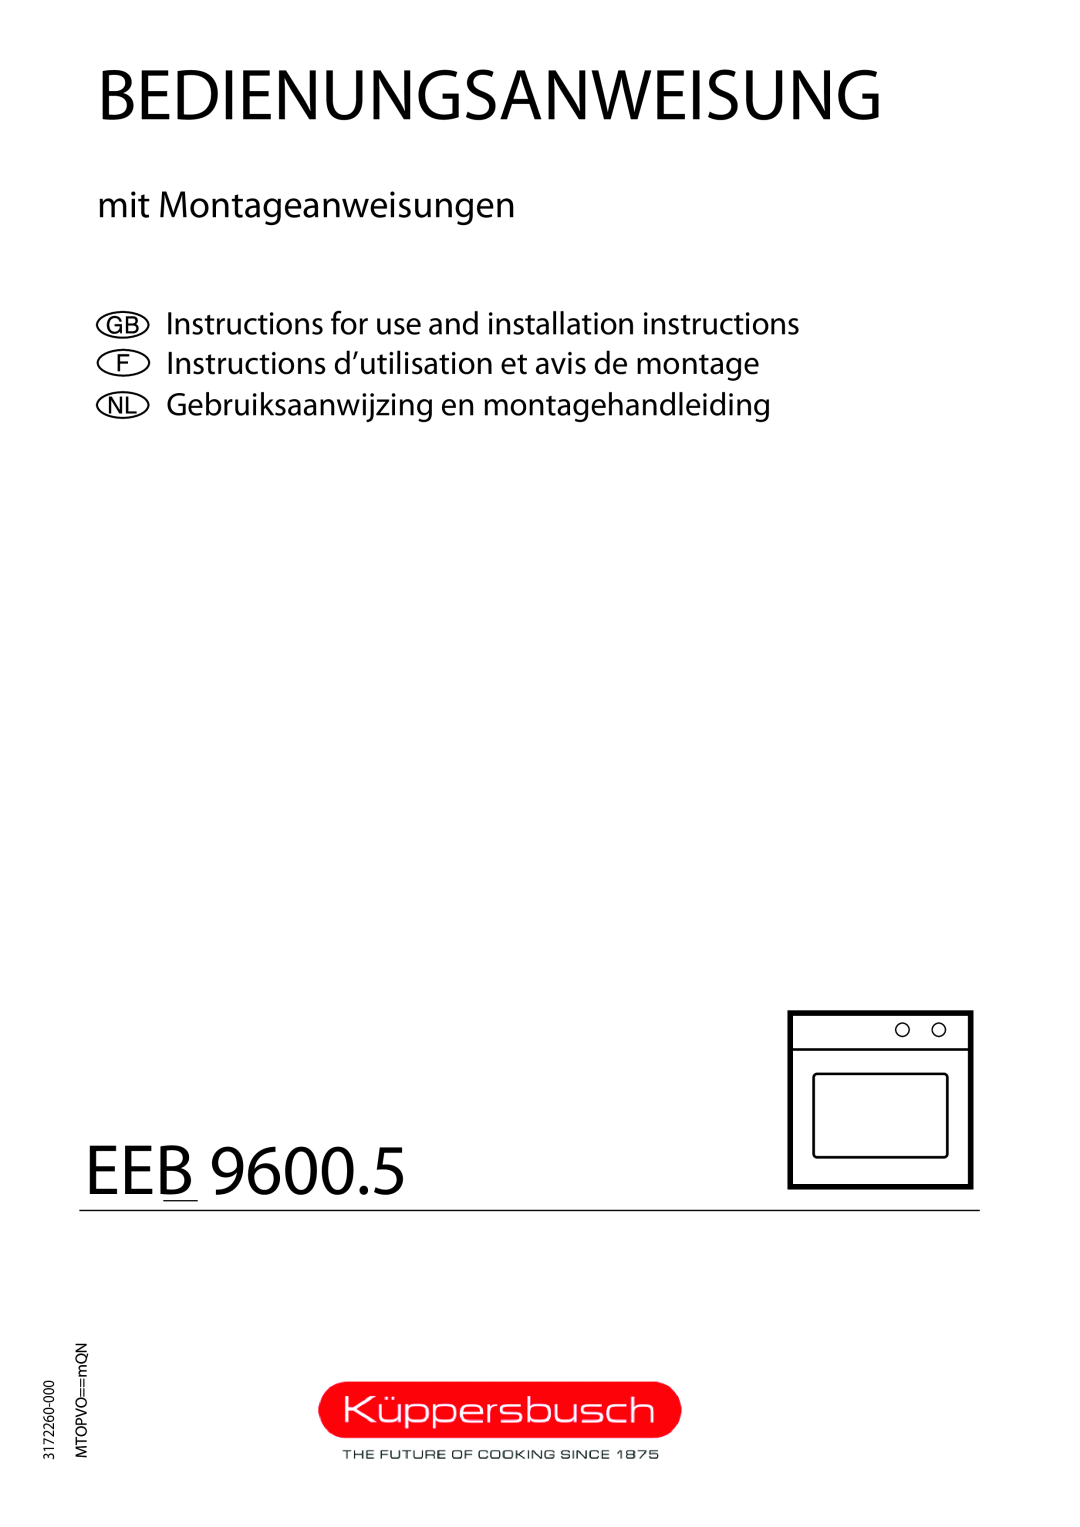 Kuppersbusch USA EEB 9600.5 installation instructions Bedienungsanweisung, EEBbb =VSMMKM9600.5, mit Montageanweisungen 